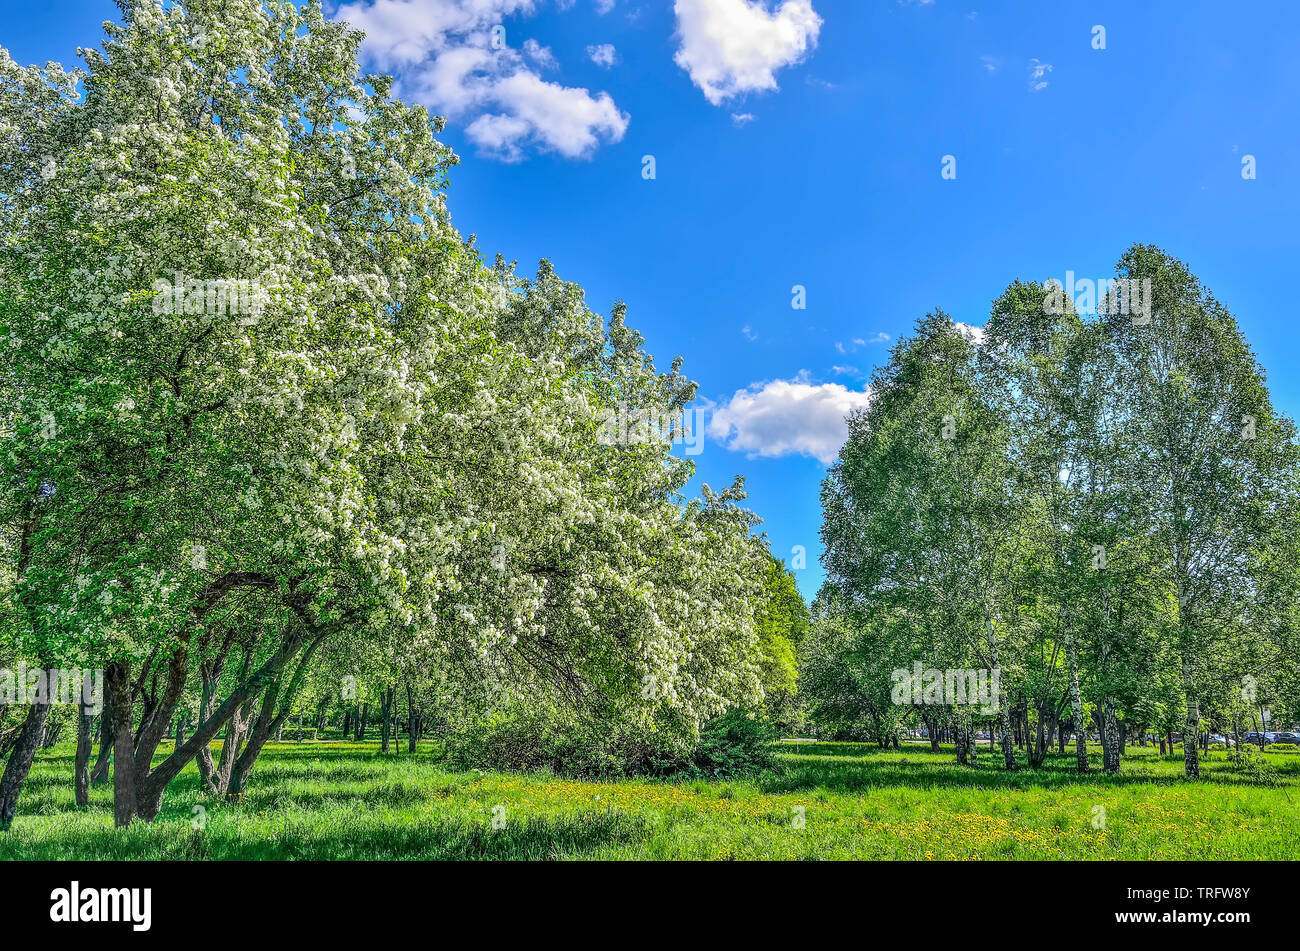 Frühjahr blühenden Apfel- und Kirschbäume in einem Stadtpark an der hellen, sonnigen Tag. Grüne Rasen unter blühenden Zweigen ist mit lebendigen Gras und kreischen abgedeckt Stockfoto